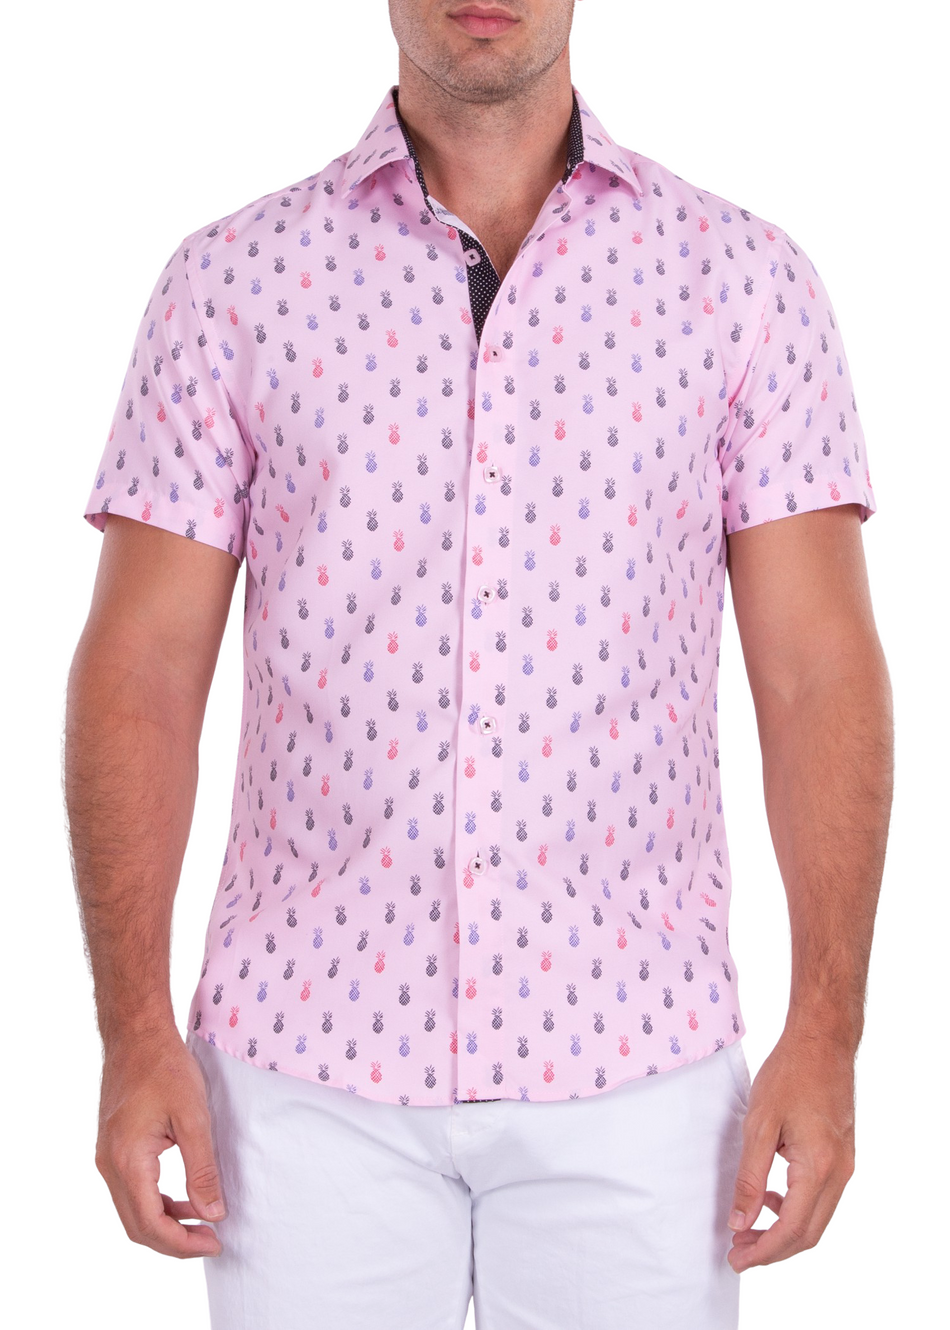 192020 - Pink Pineapple Print Button Up Short Sleeve Dress Shirt